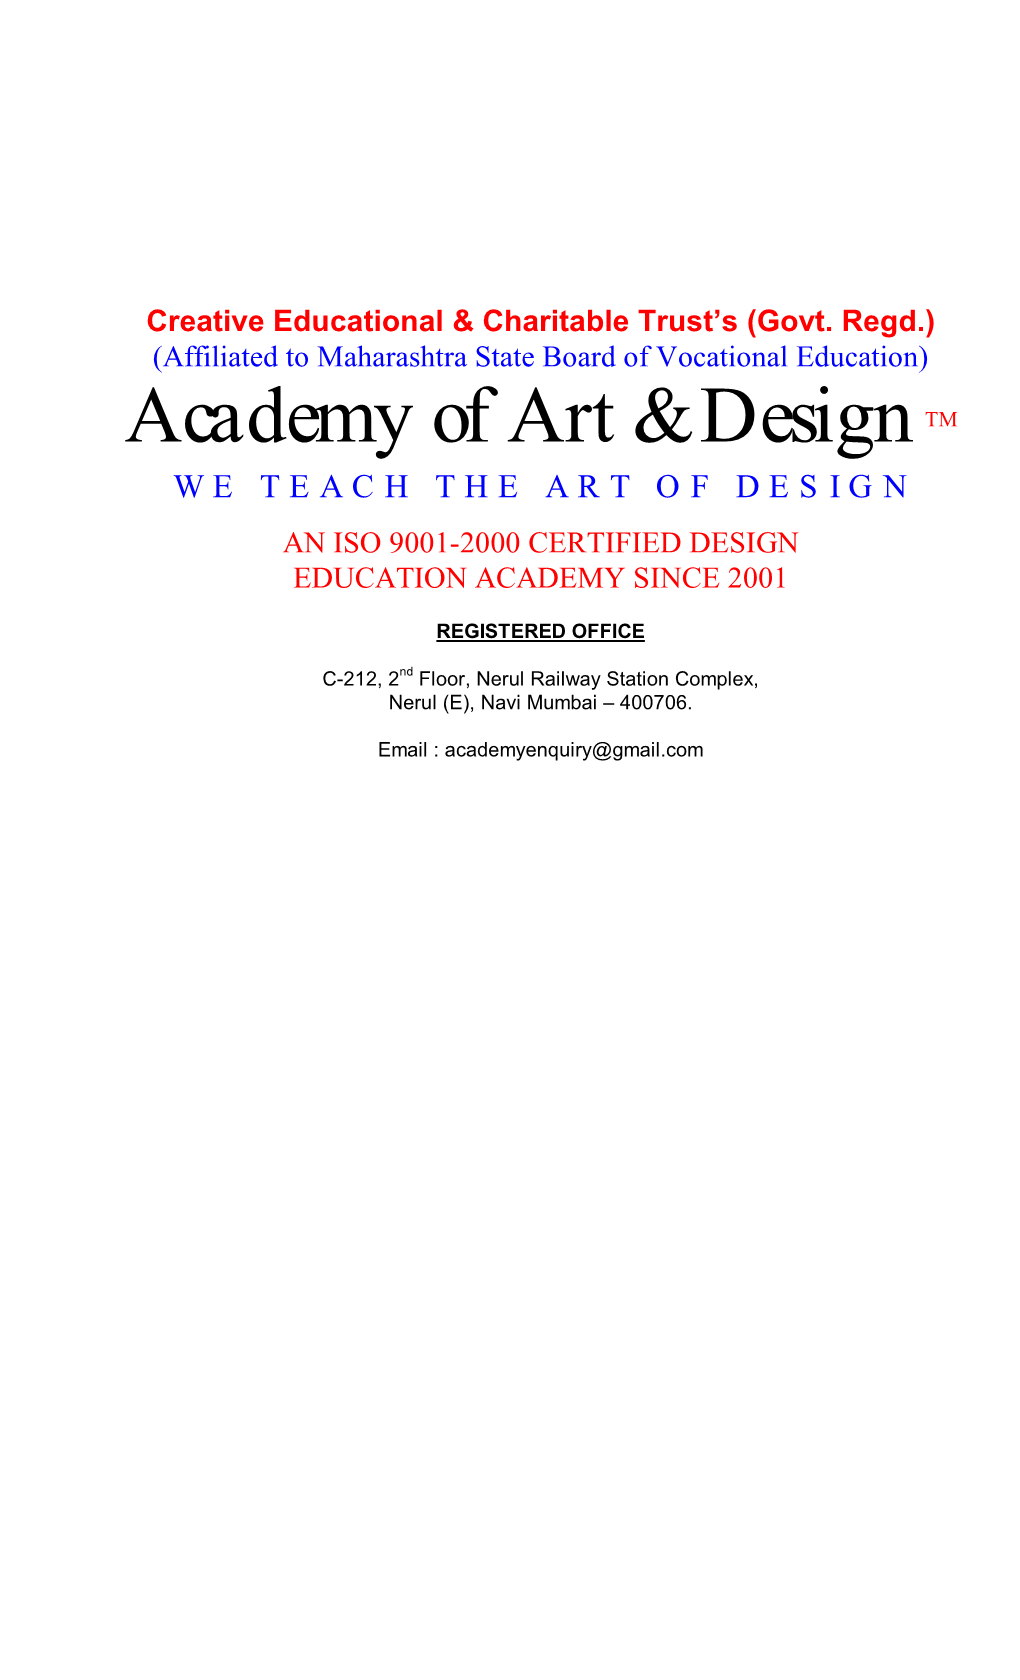 Academy of Art & Designtm